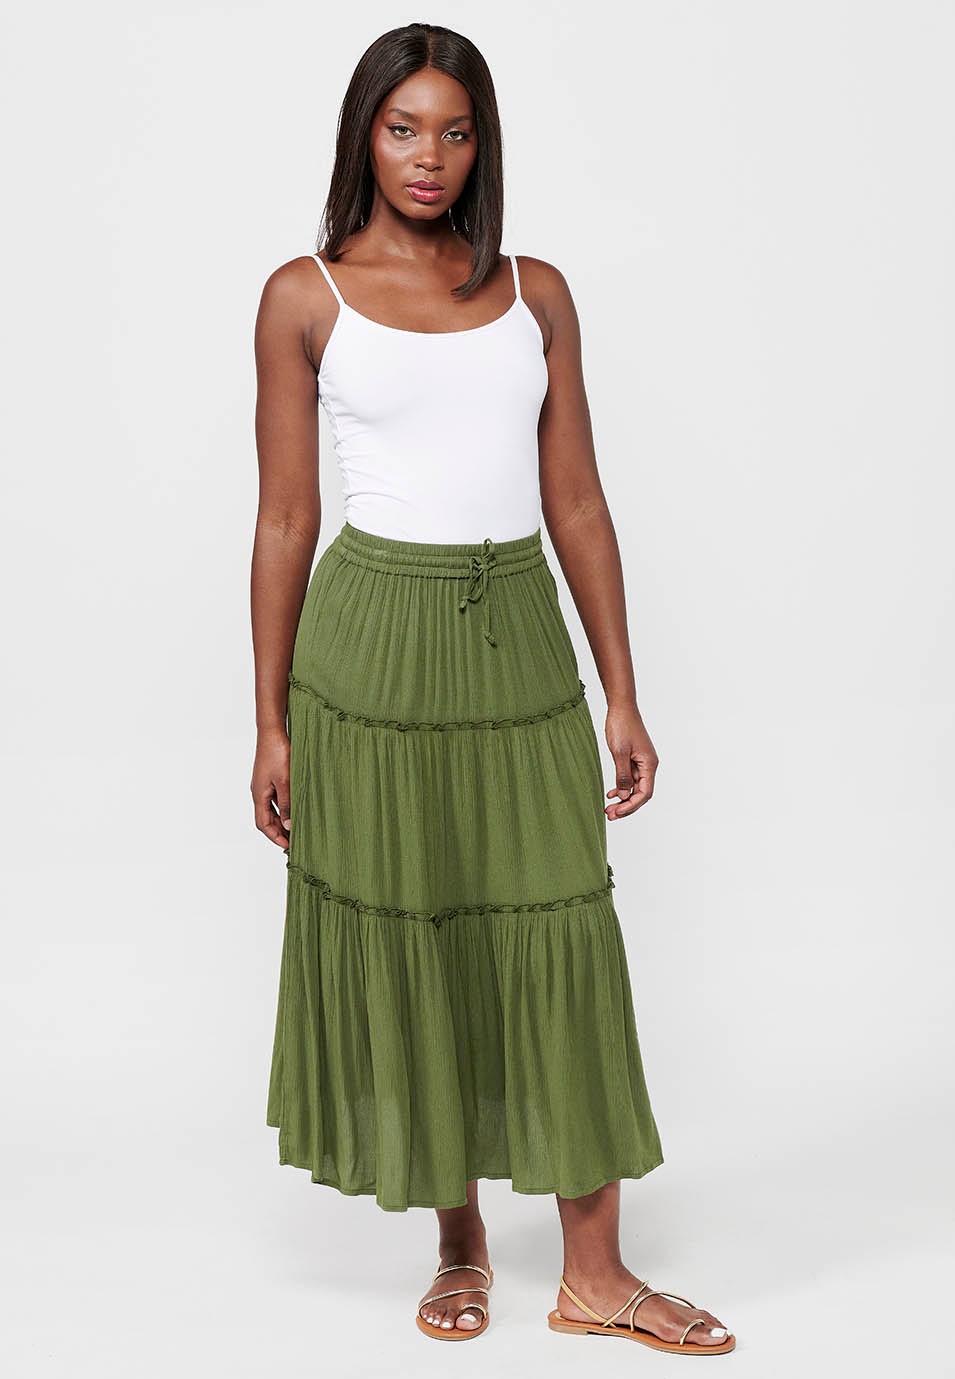 Falda larga, cintura engomada, color verde para mujer